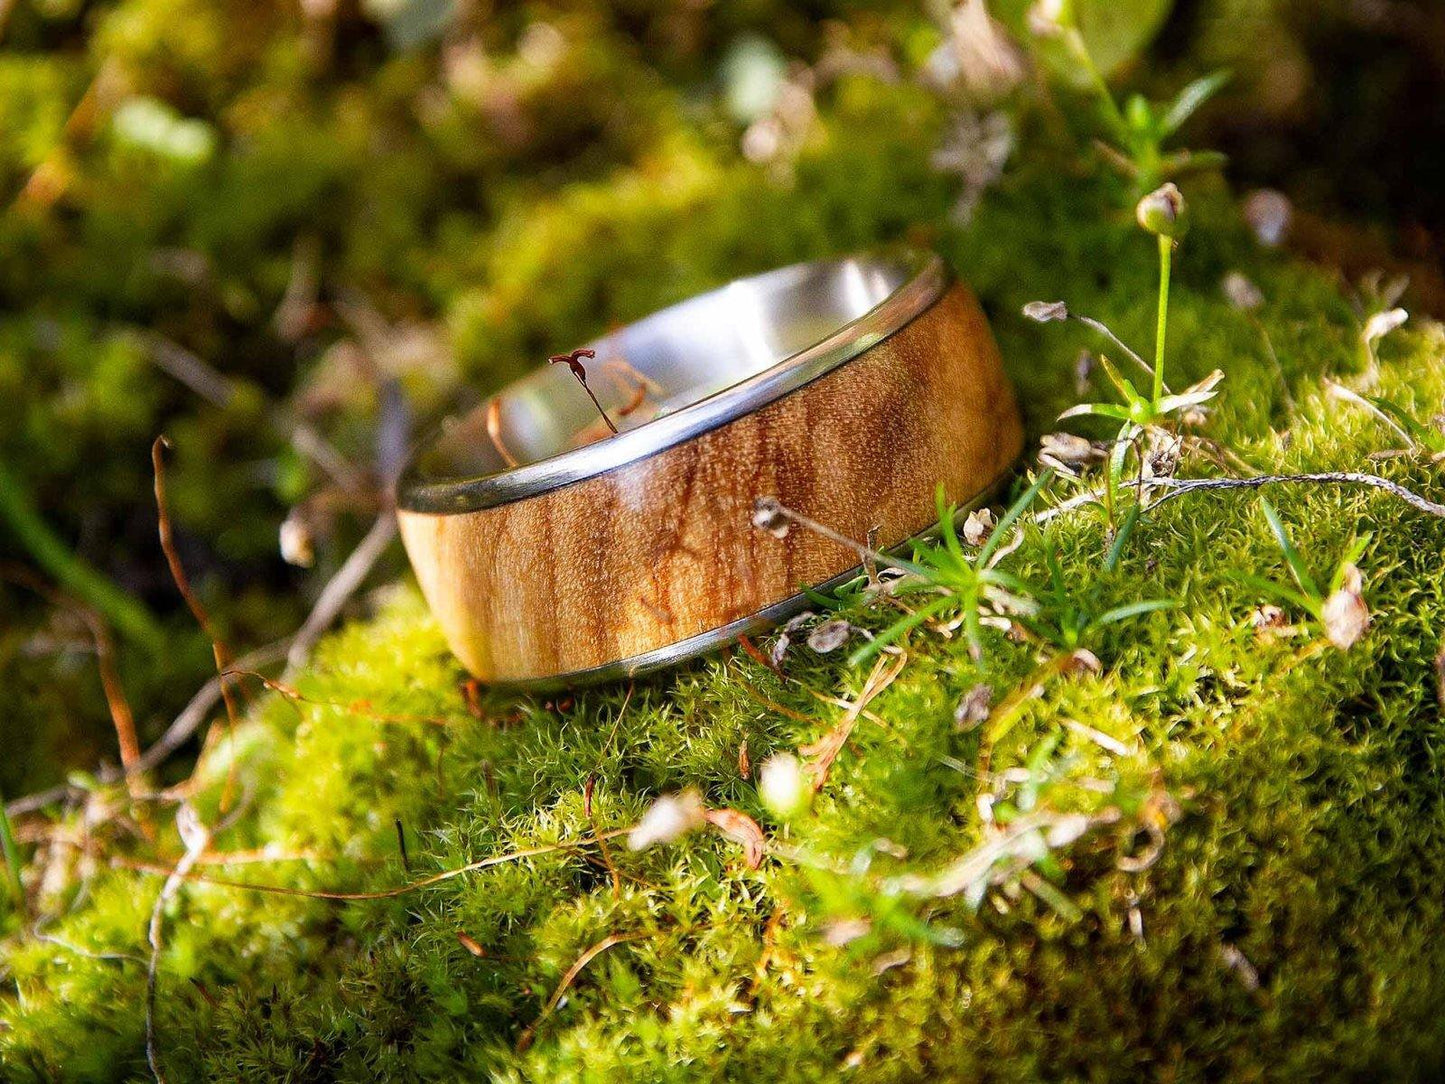 Ring aus Holz und Metall - Edelstahl - Breite S 5mm Amazakone außergewöhnlich RingHolzallerliebst.shop